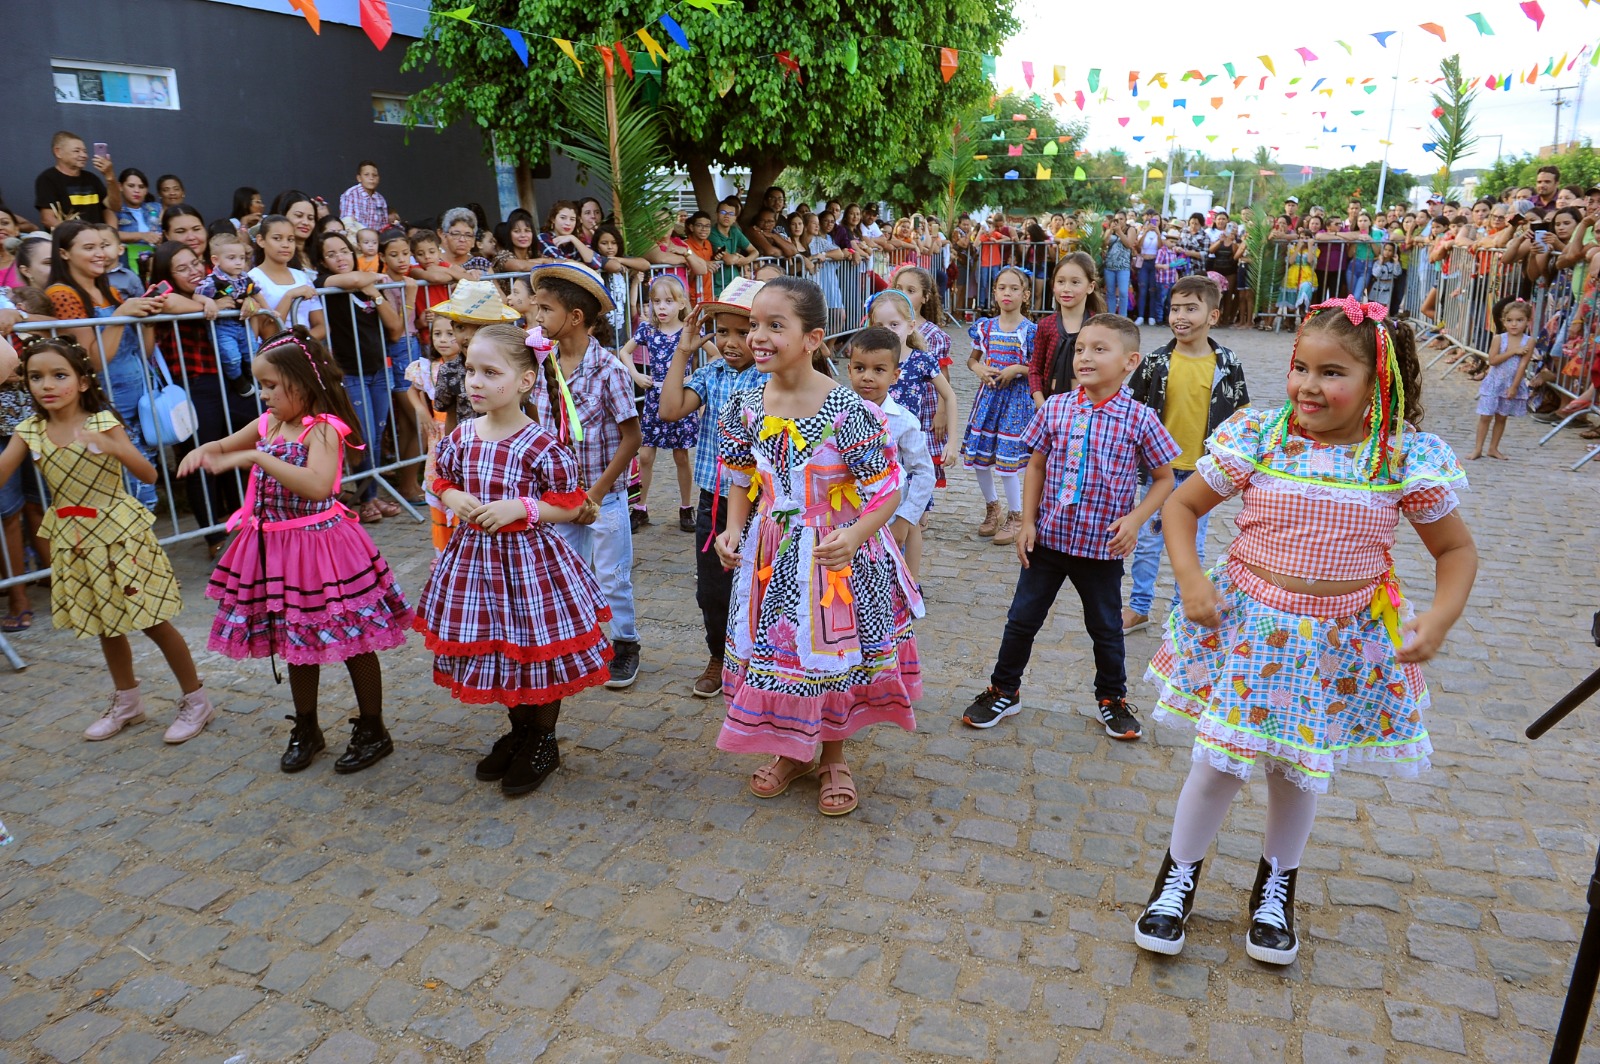 Festival-Quadrilhas-Escolares-8 Retorno às atividades: Festival de Quadrilhas movimenta comunidade escolar e atrai grande público